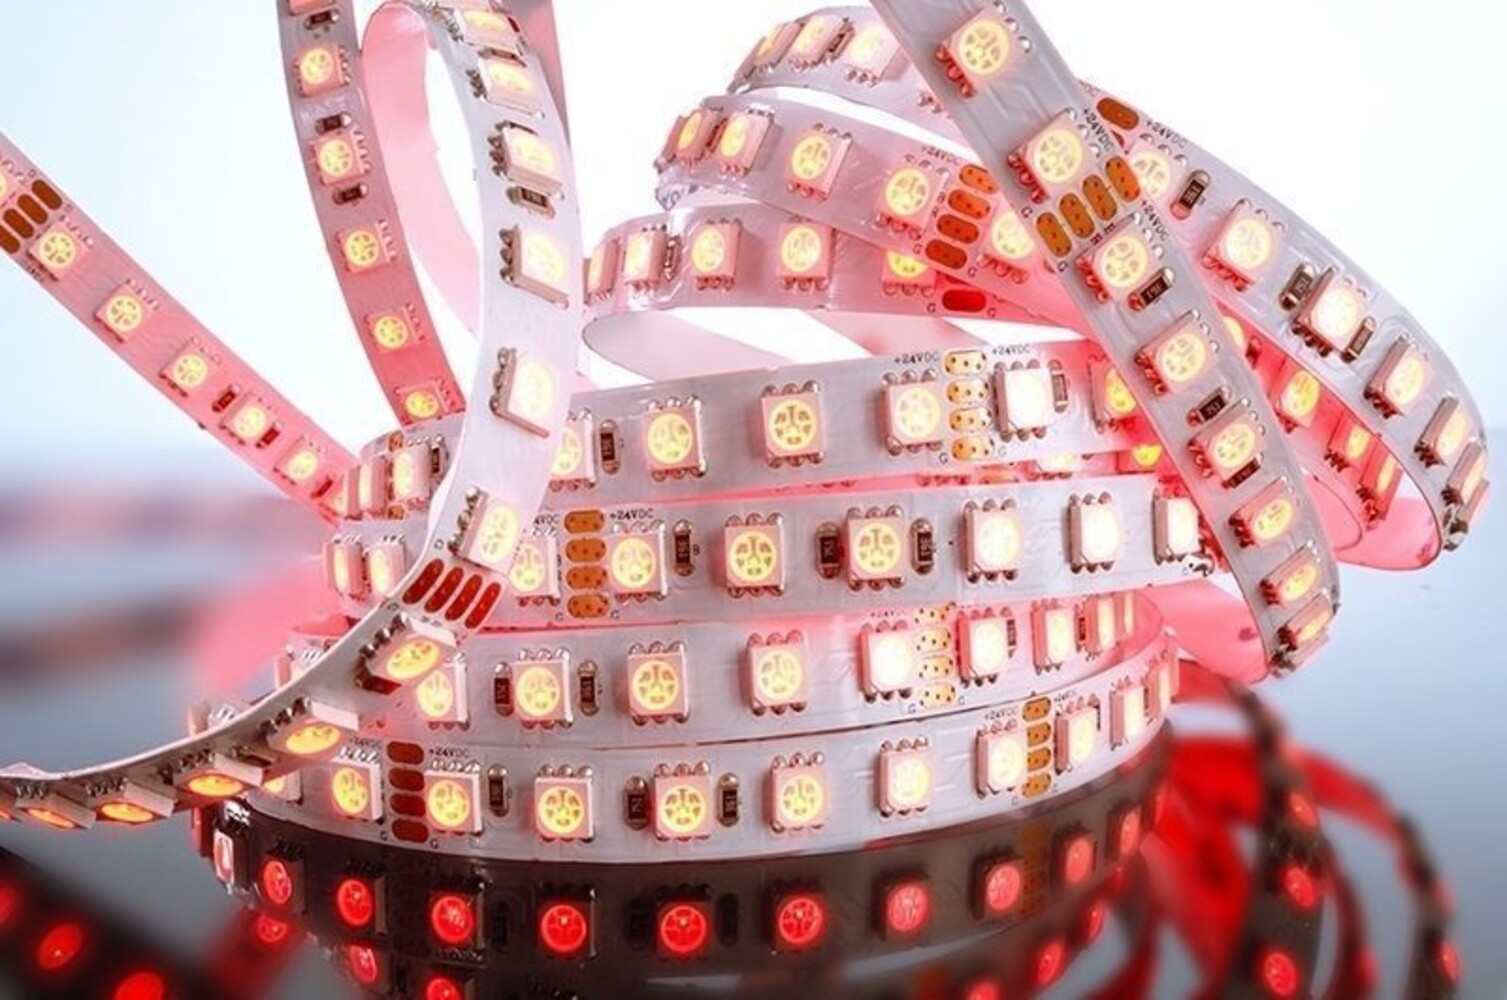 farbenfroher flexibler LED Streifen von der Marke Deko-Light